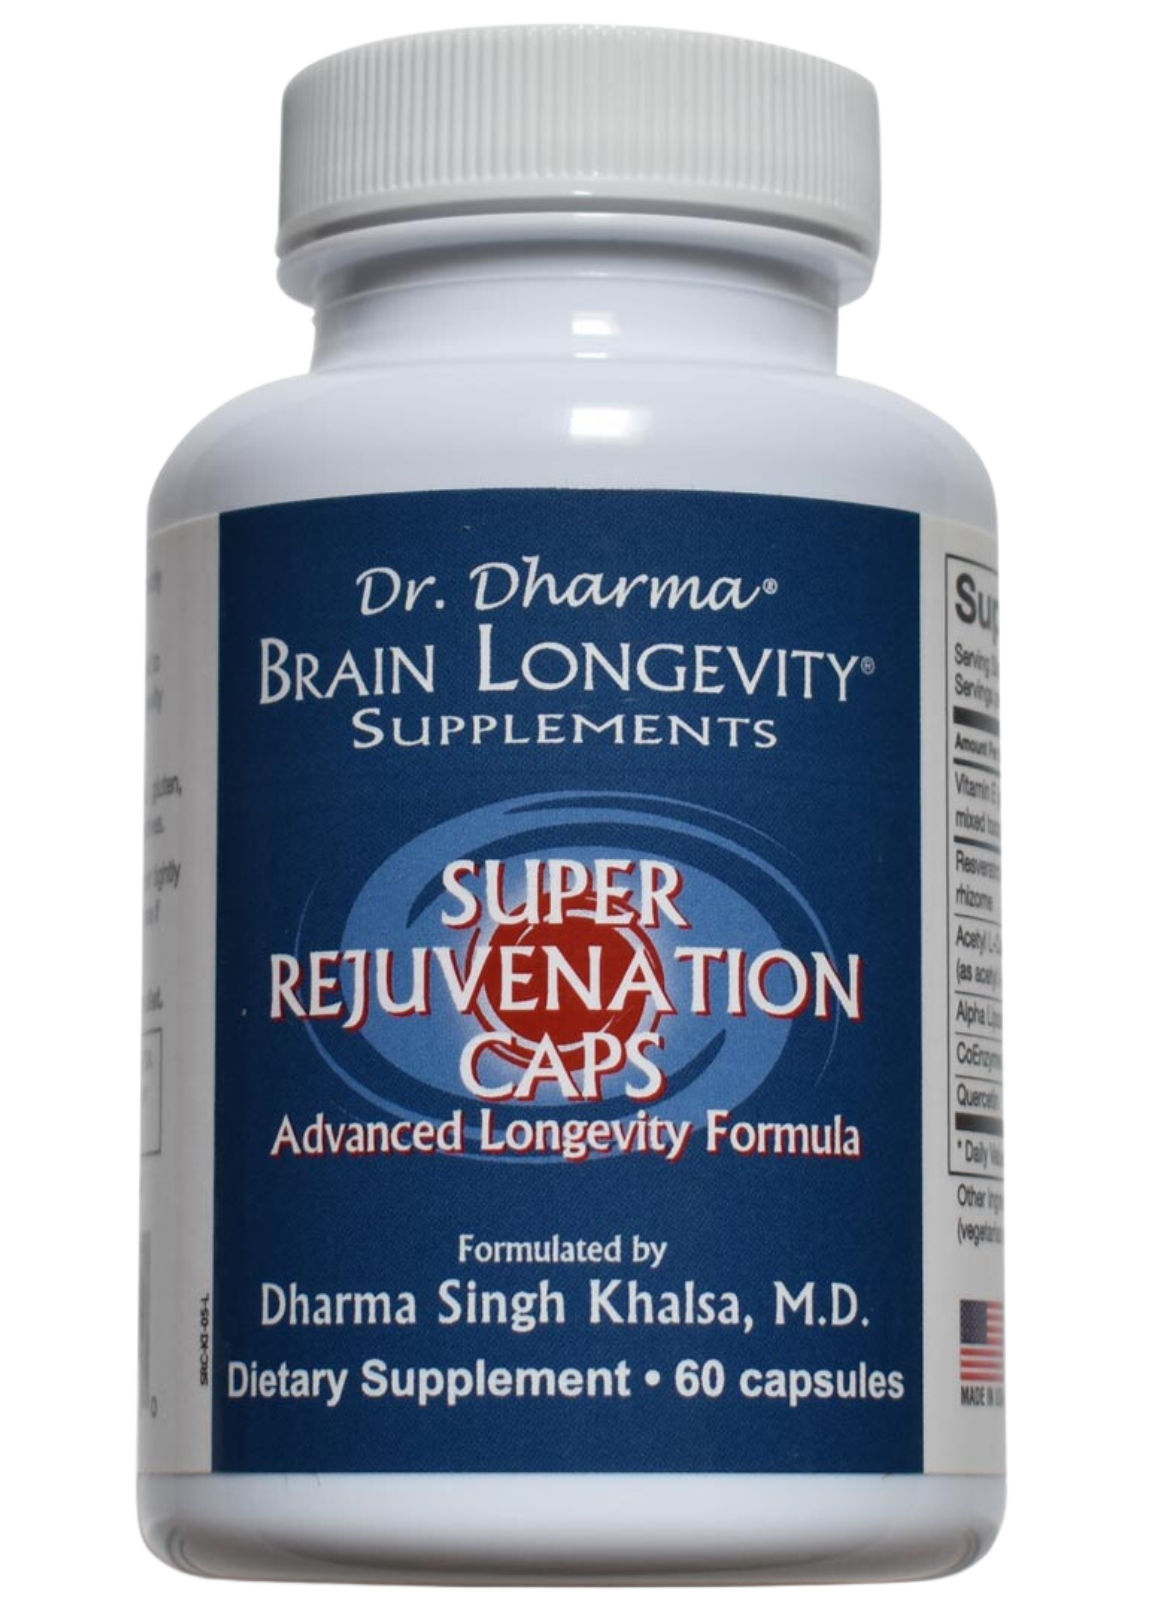 Super Rejuvenation Caps